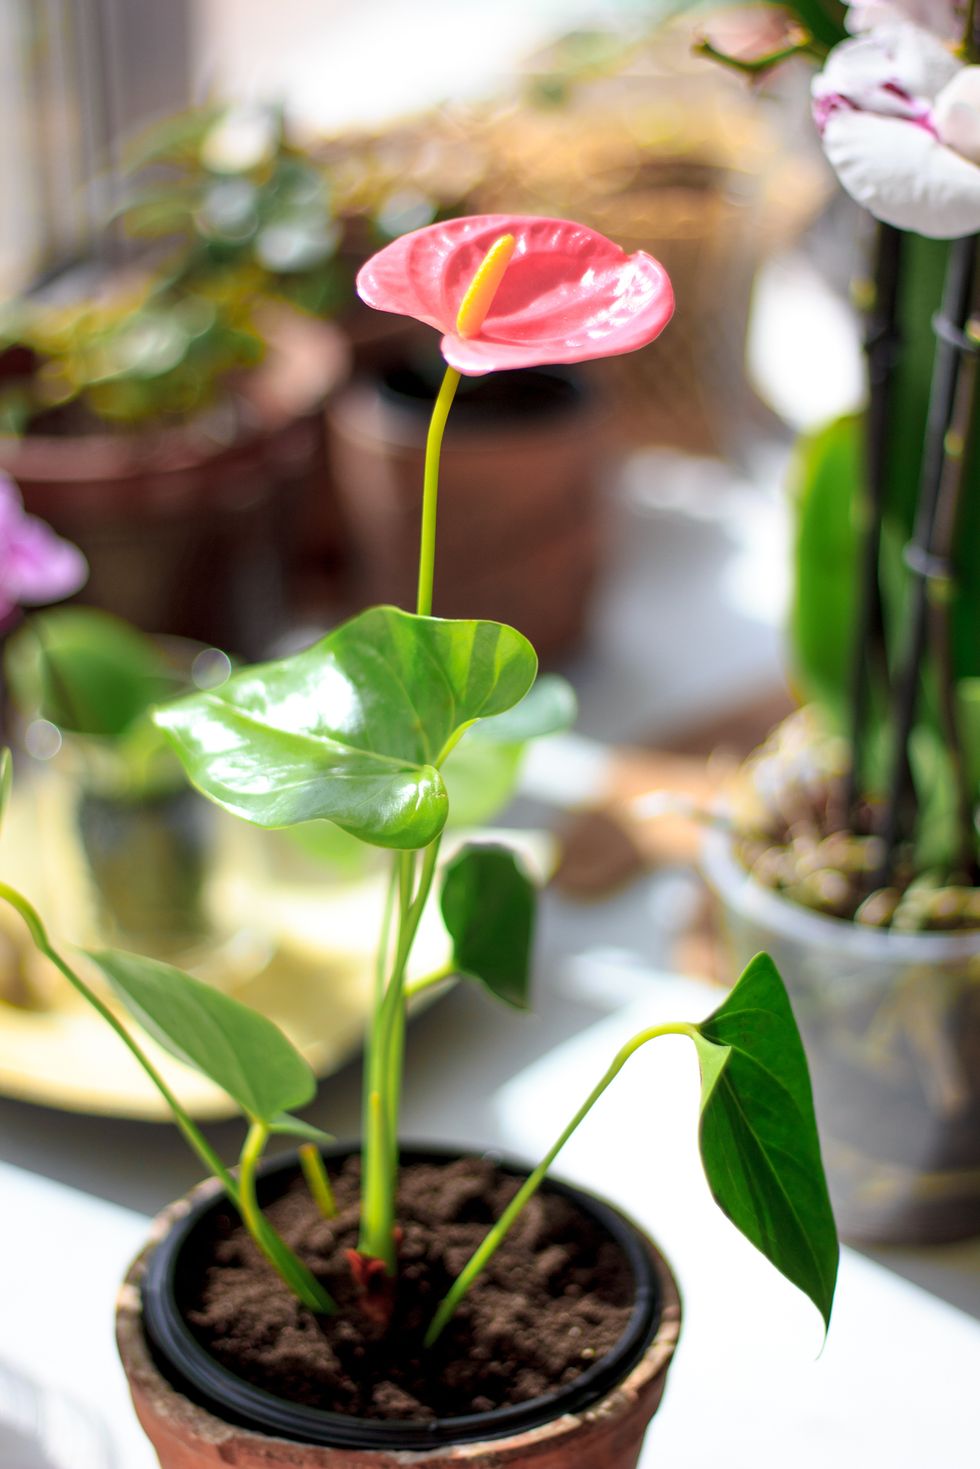 Pink anthurium flower